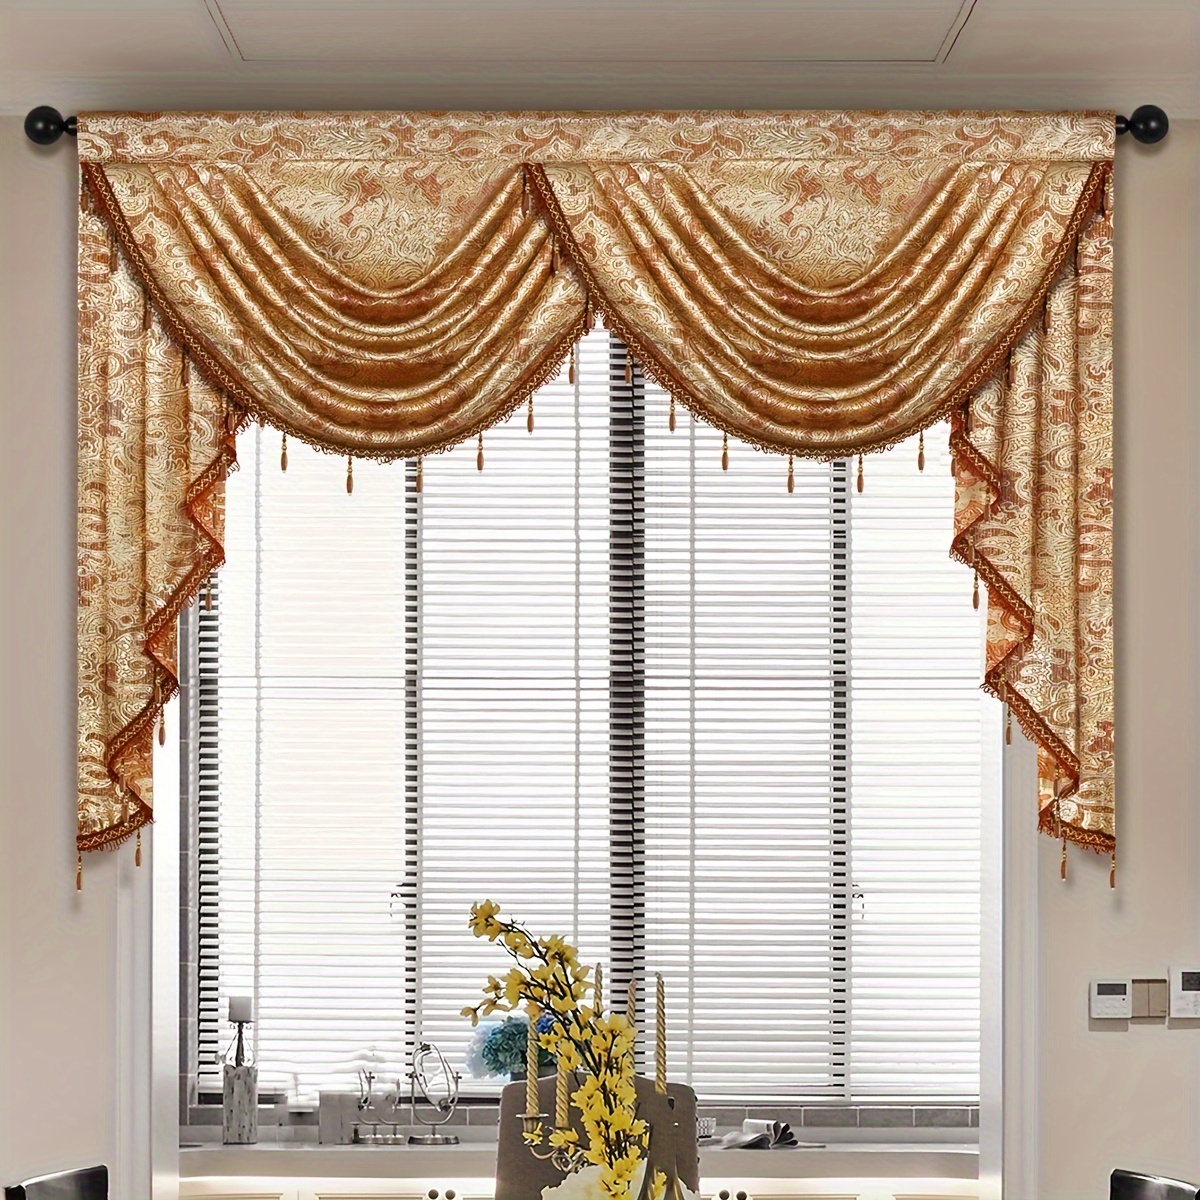 trasparente mantovana per finestra 12 X 59 lino cucina Tende con nappe  palo tasca agriturismo Mantovana per finestre Decorazioni , beige 1 a  pannello